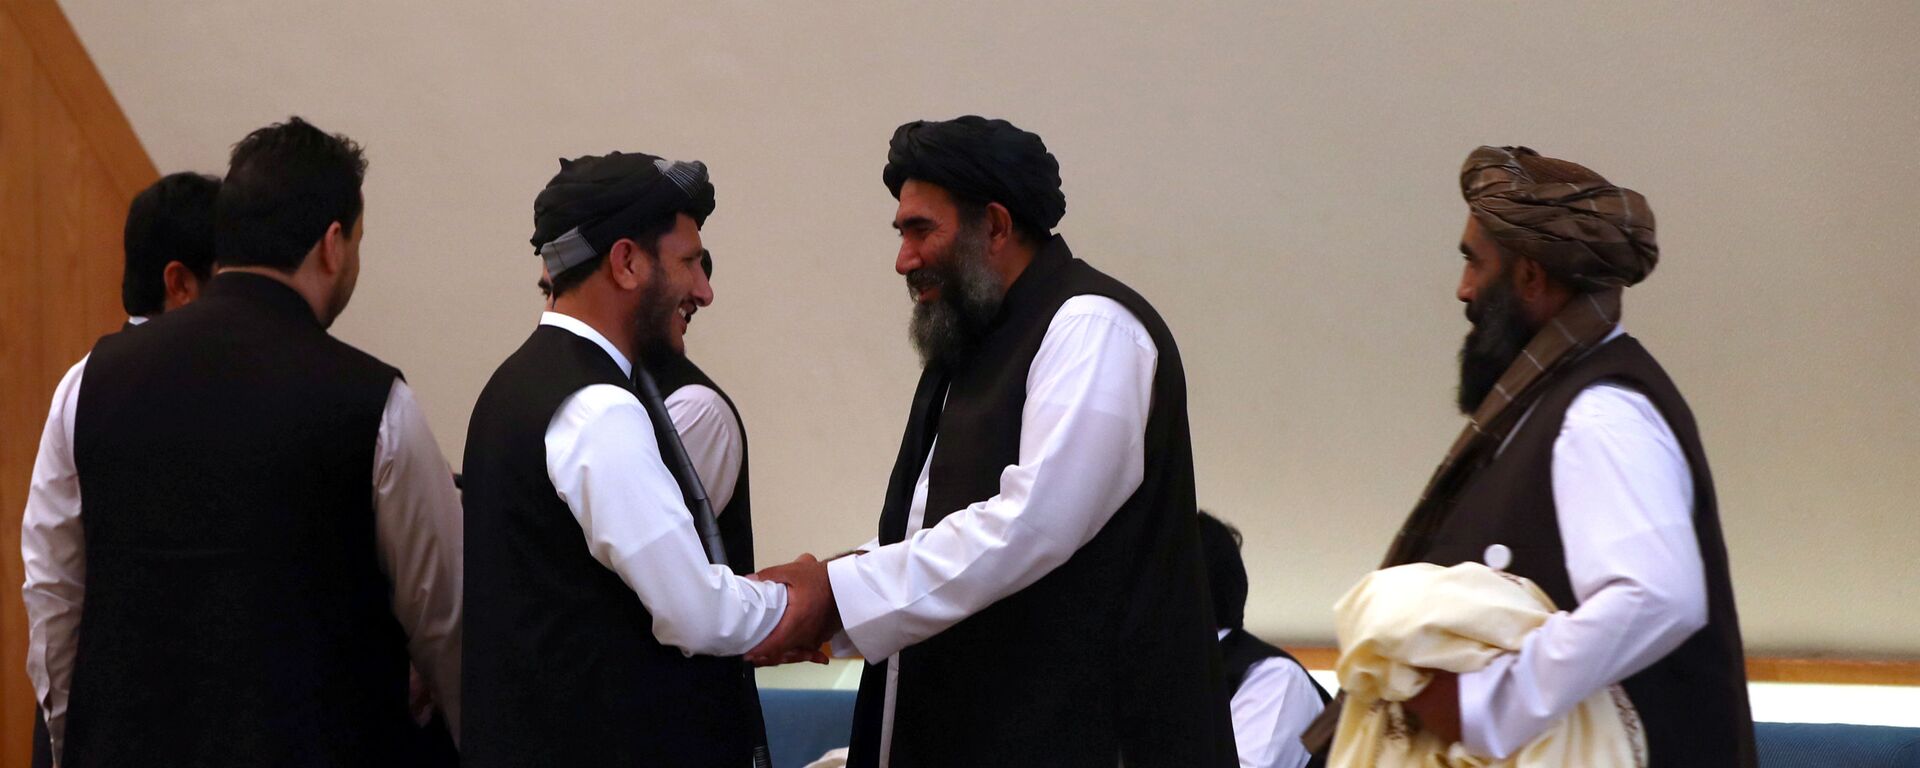 أعضاء وفد طالبان الأفغاني يجتمعون قبل توقيع اتفاق بينهم وبين المسؤولين الأميركيين في الدوحة - سبوتنيك عربي, 1920, 11.04.2020